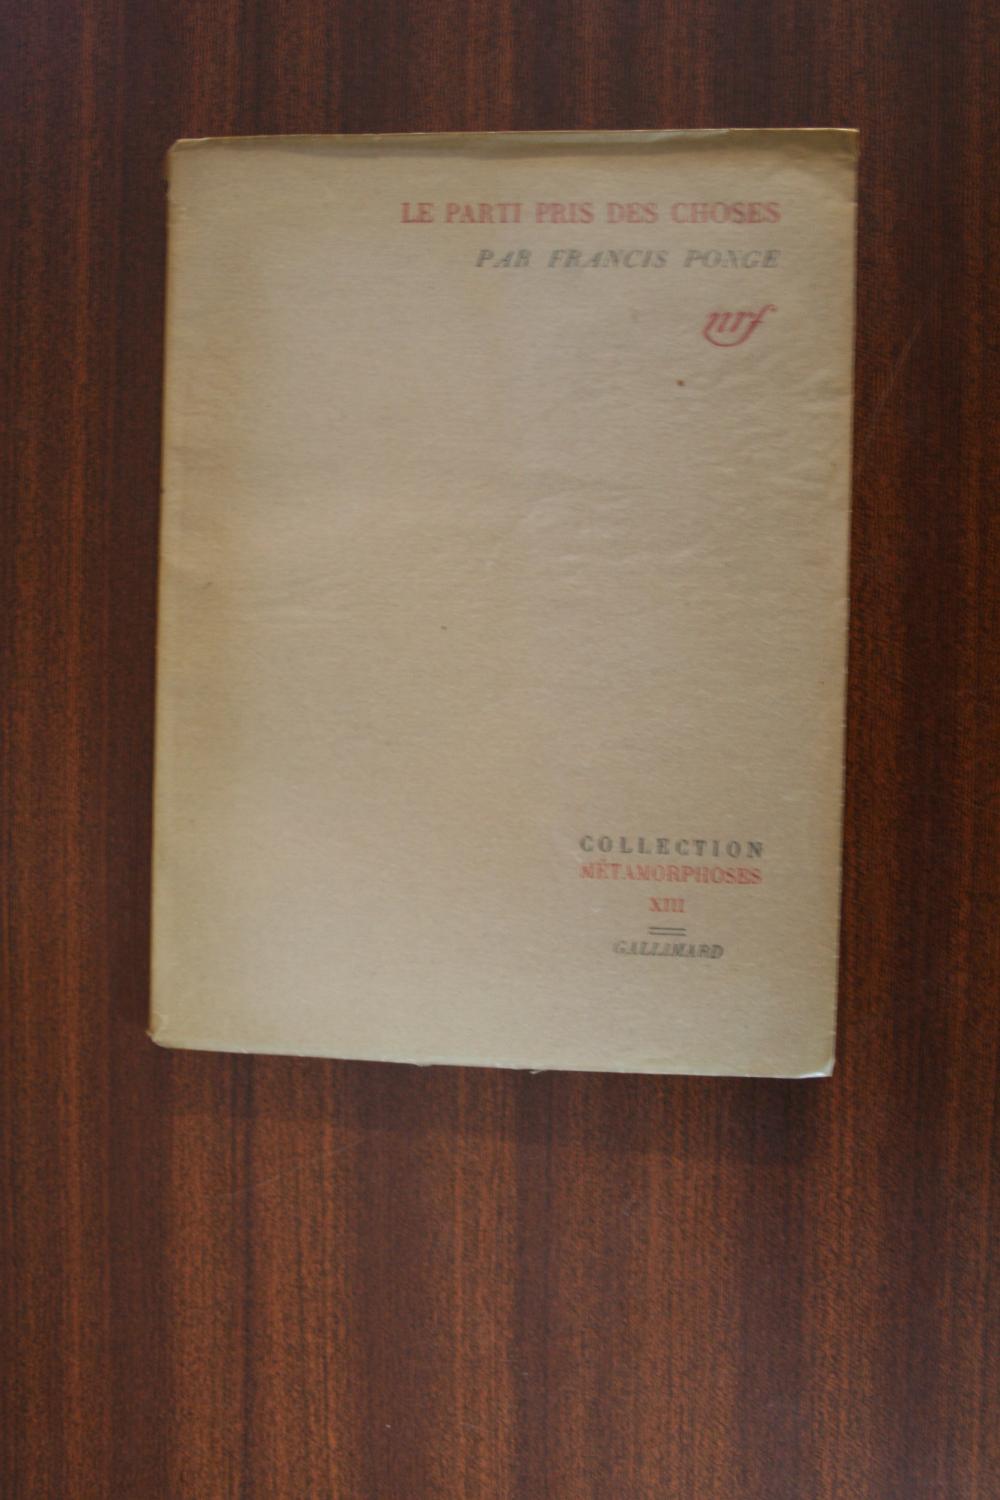 Le Parti Pris Des Choses Texte Intégral LE PARTI PRIS DES CHOSES by Francis Ponge: Bon Couverture souple (1949